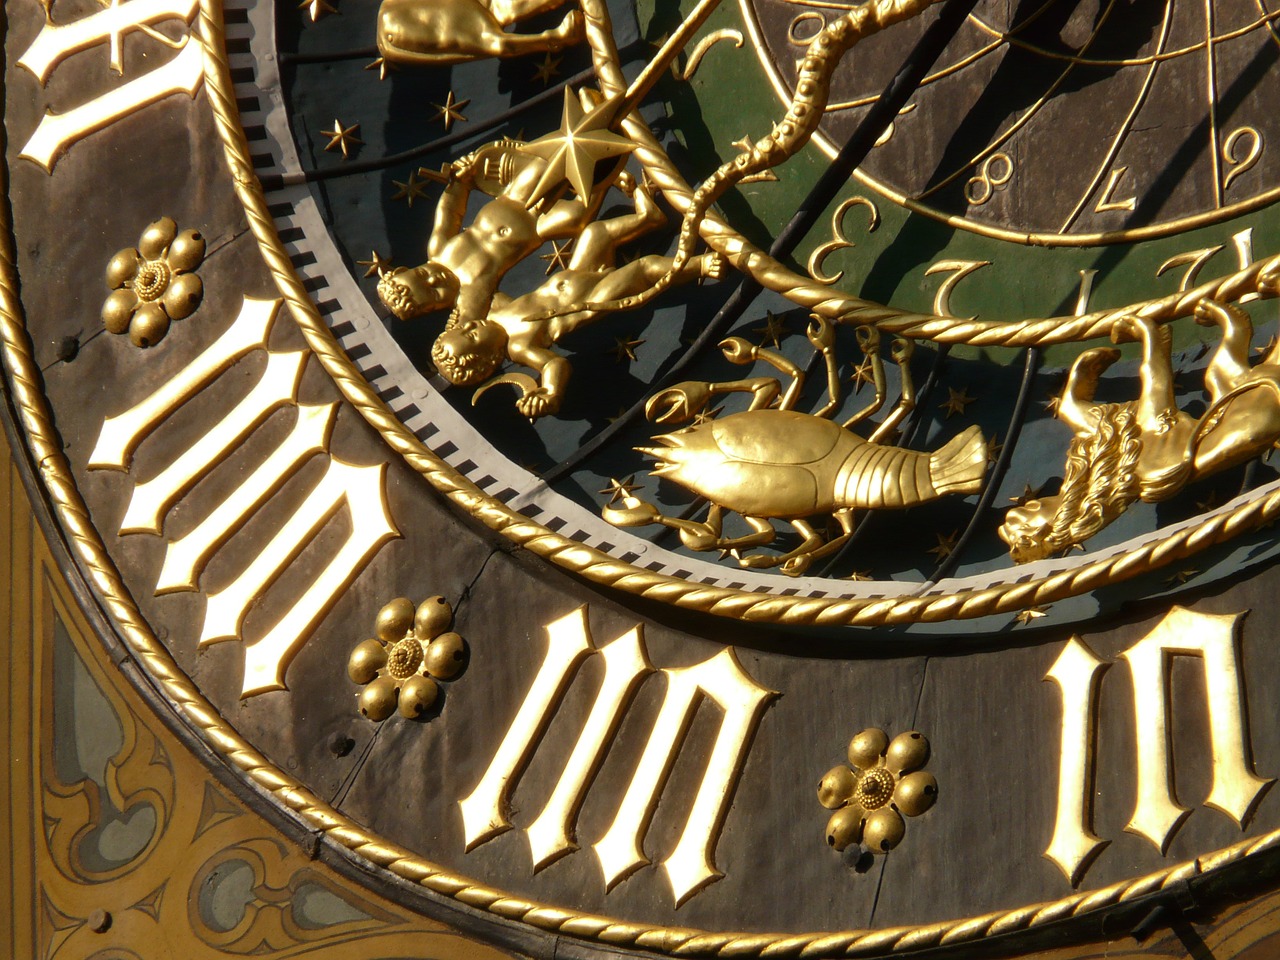 Astronominis Laikrodis, Laikrodis, Laikas, Laikas, Data, Diena, Mėnuo, Metai, Zodiako, Zodiako Žiedas